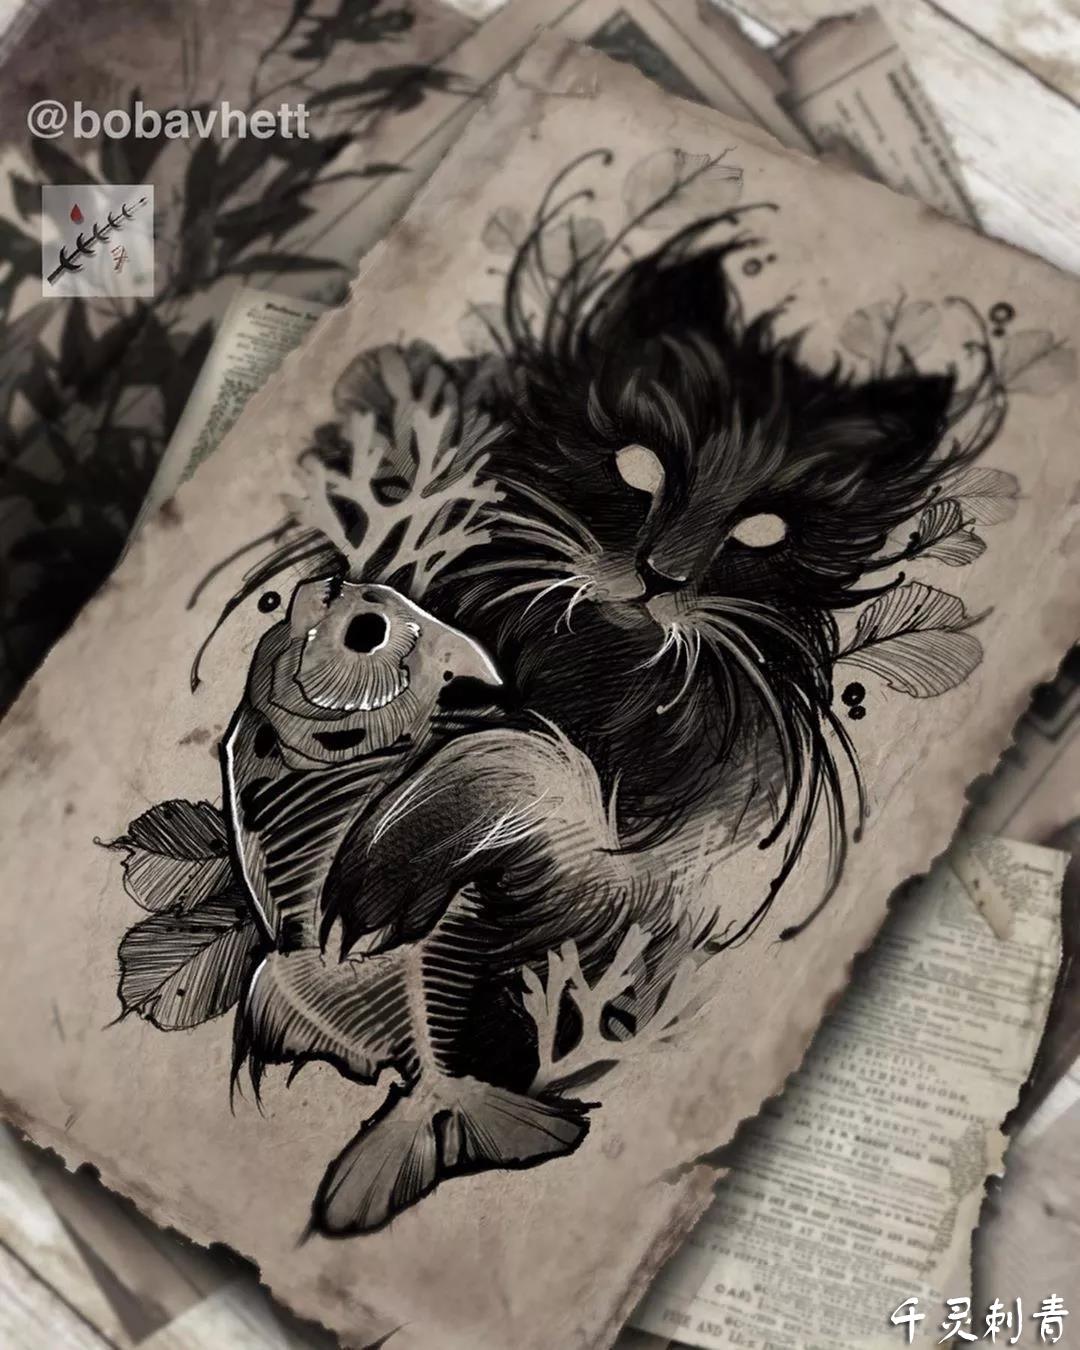 暗黑猫咪鱼纹身,暗黑猫咪鱼纹身手稿,暗黑猫咪鱼纹身手稿图案